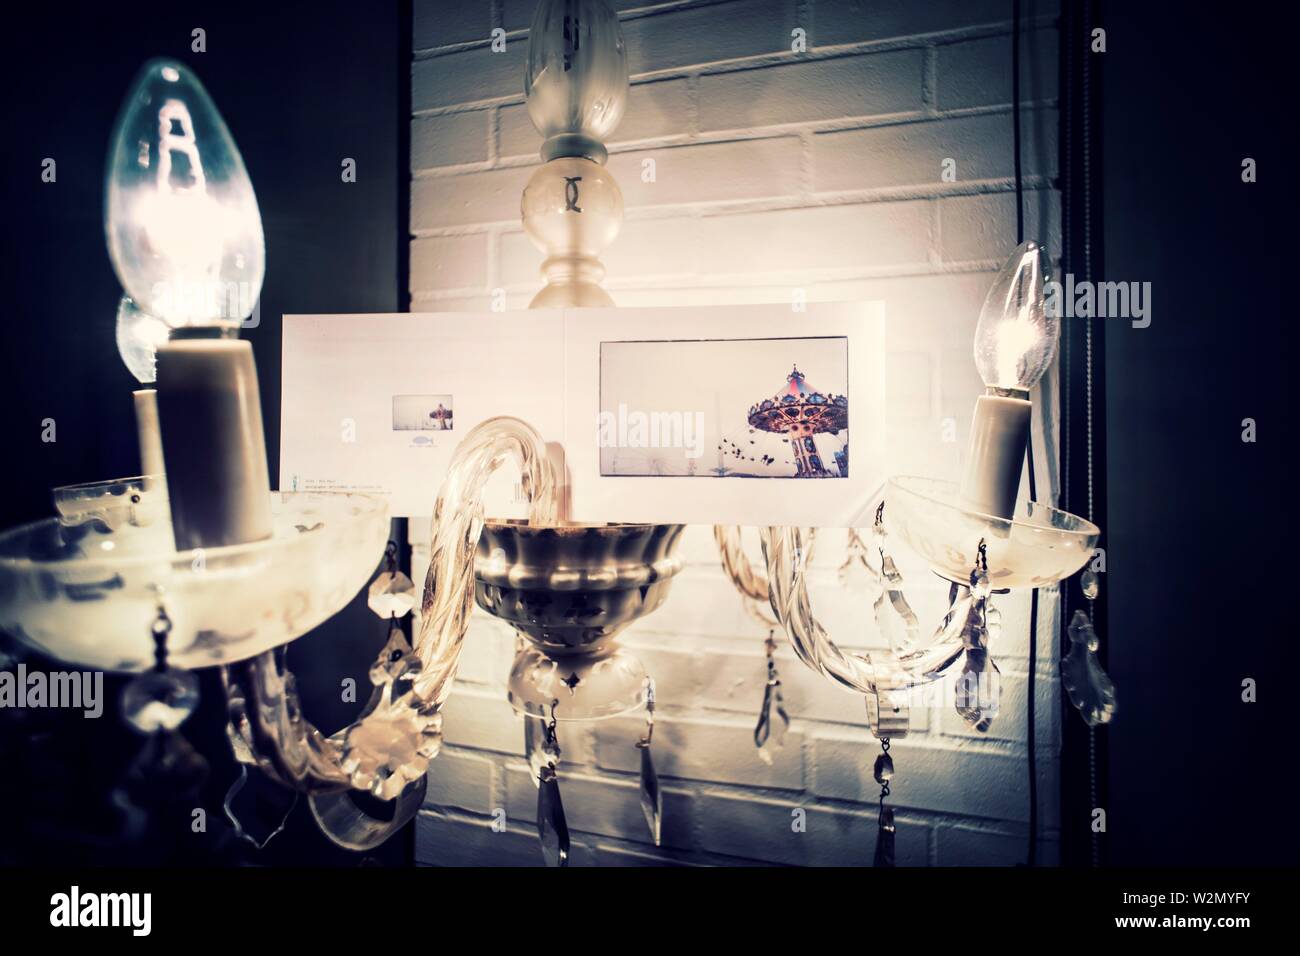 Nahaufnahme von einem Kronleuchter Lampe leuchtet mit einer Postkarte mit einem Bild von einem Karussell. Mahon, Baleares, Spanien, Europa. Stockfoto